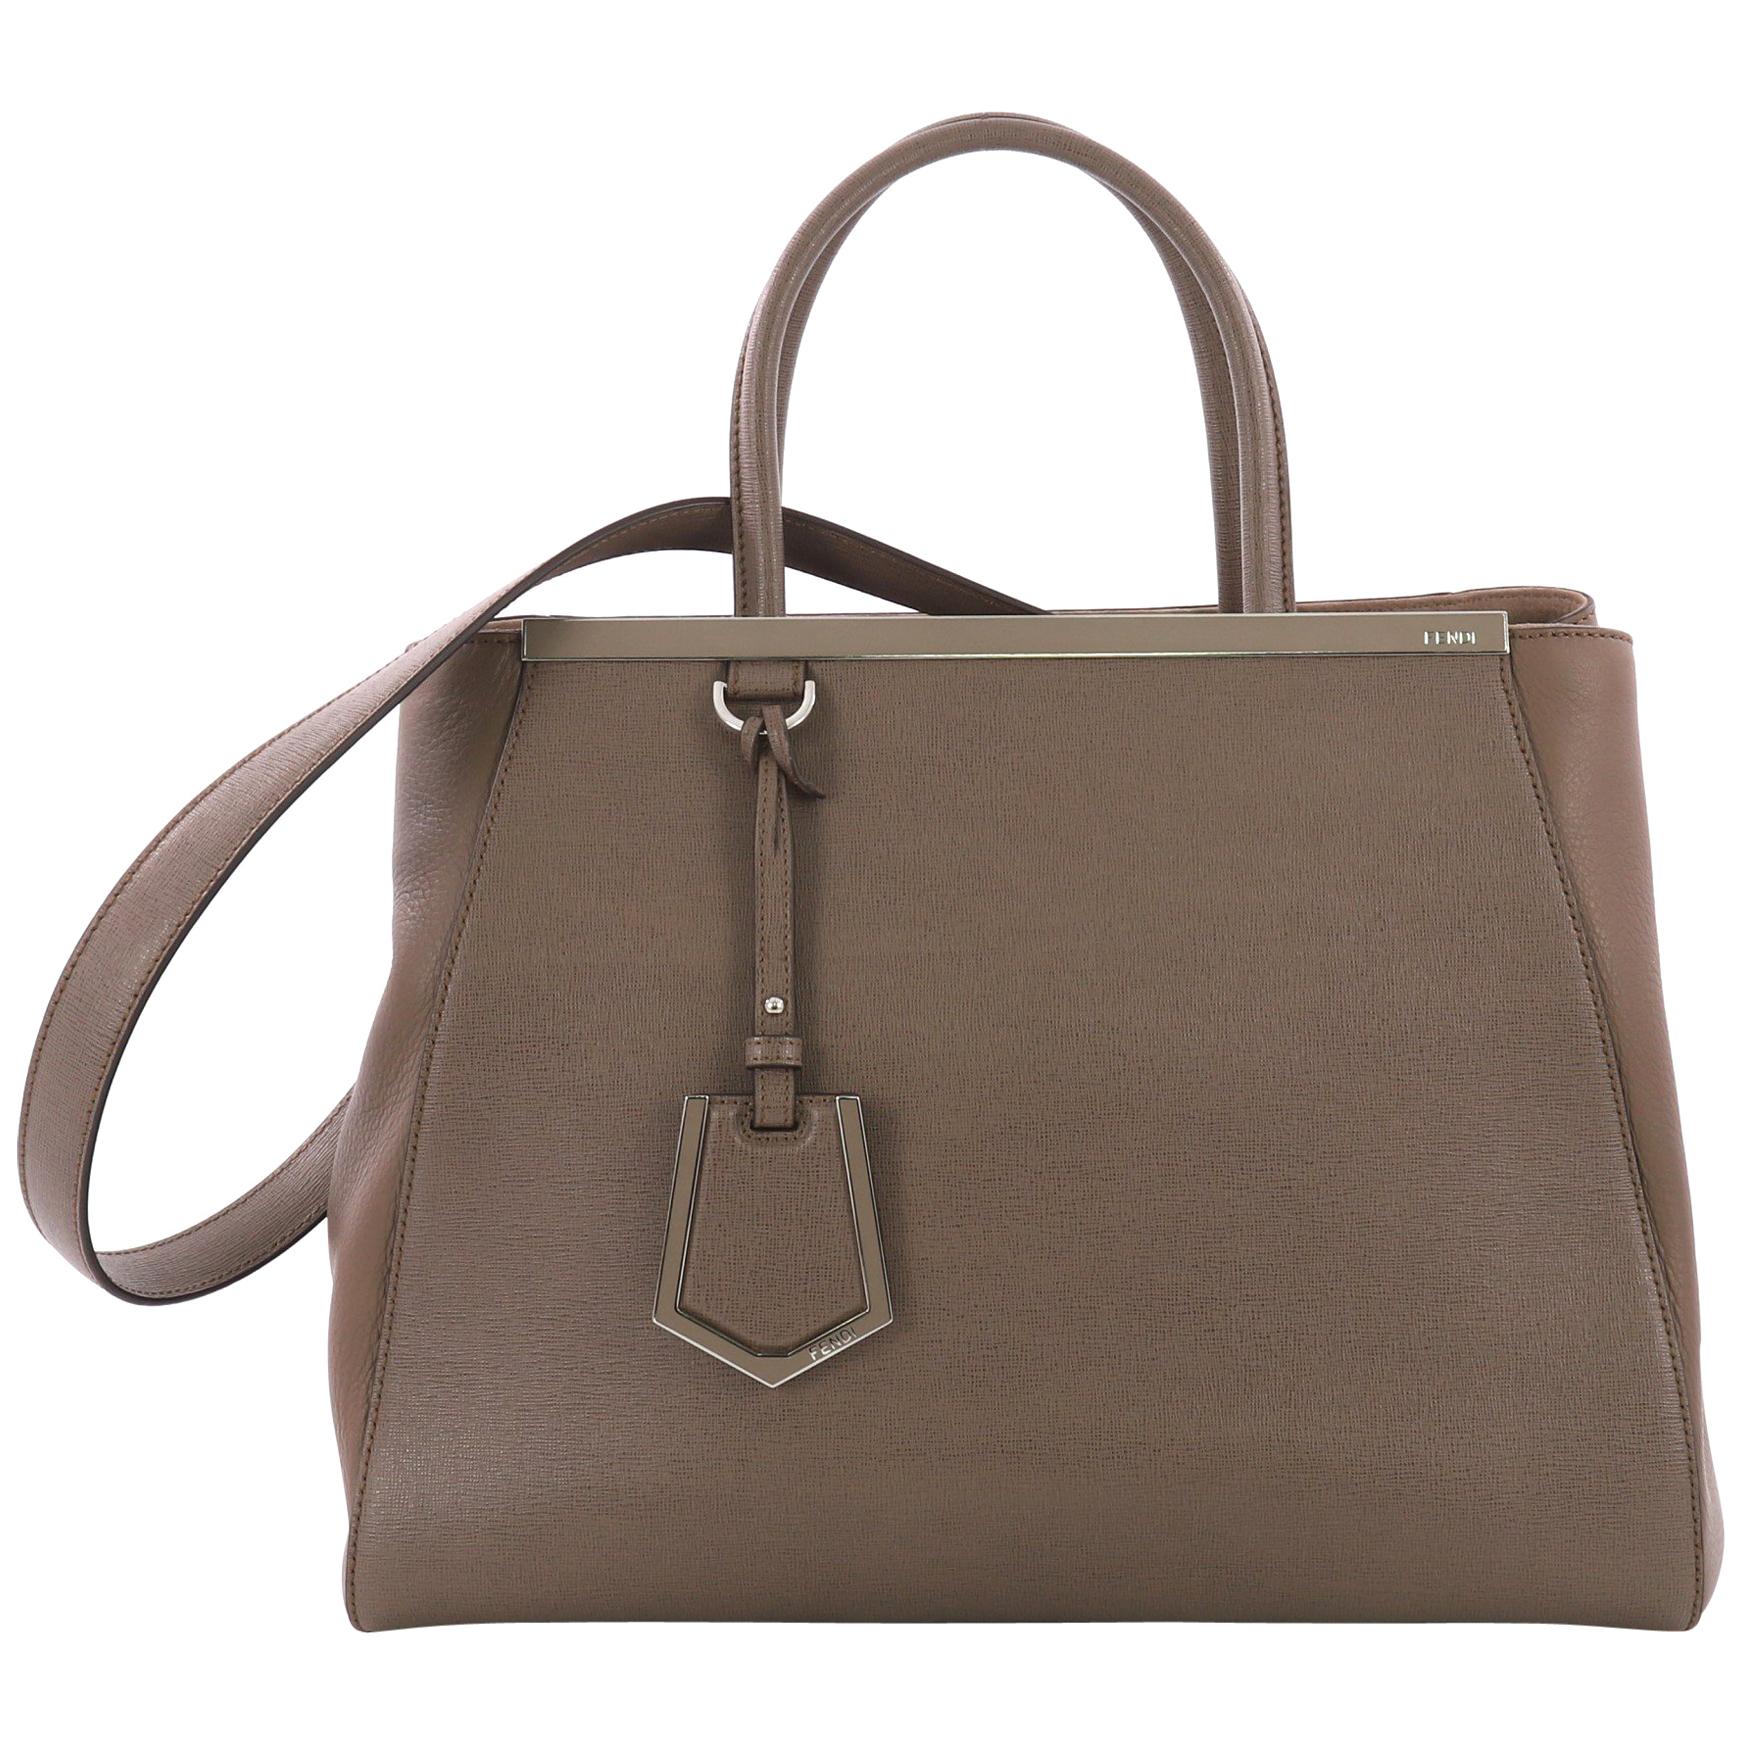 Fendi 2Jours Handbag Leather Medium,